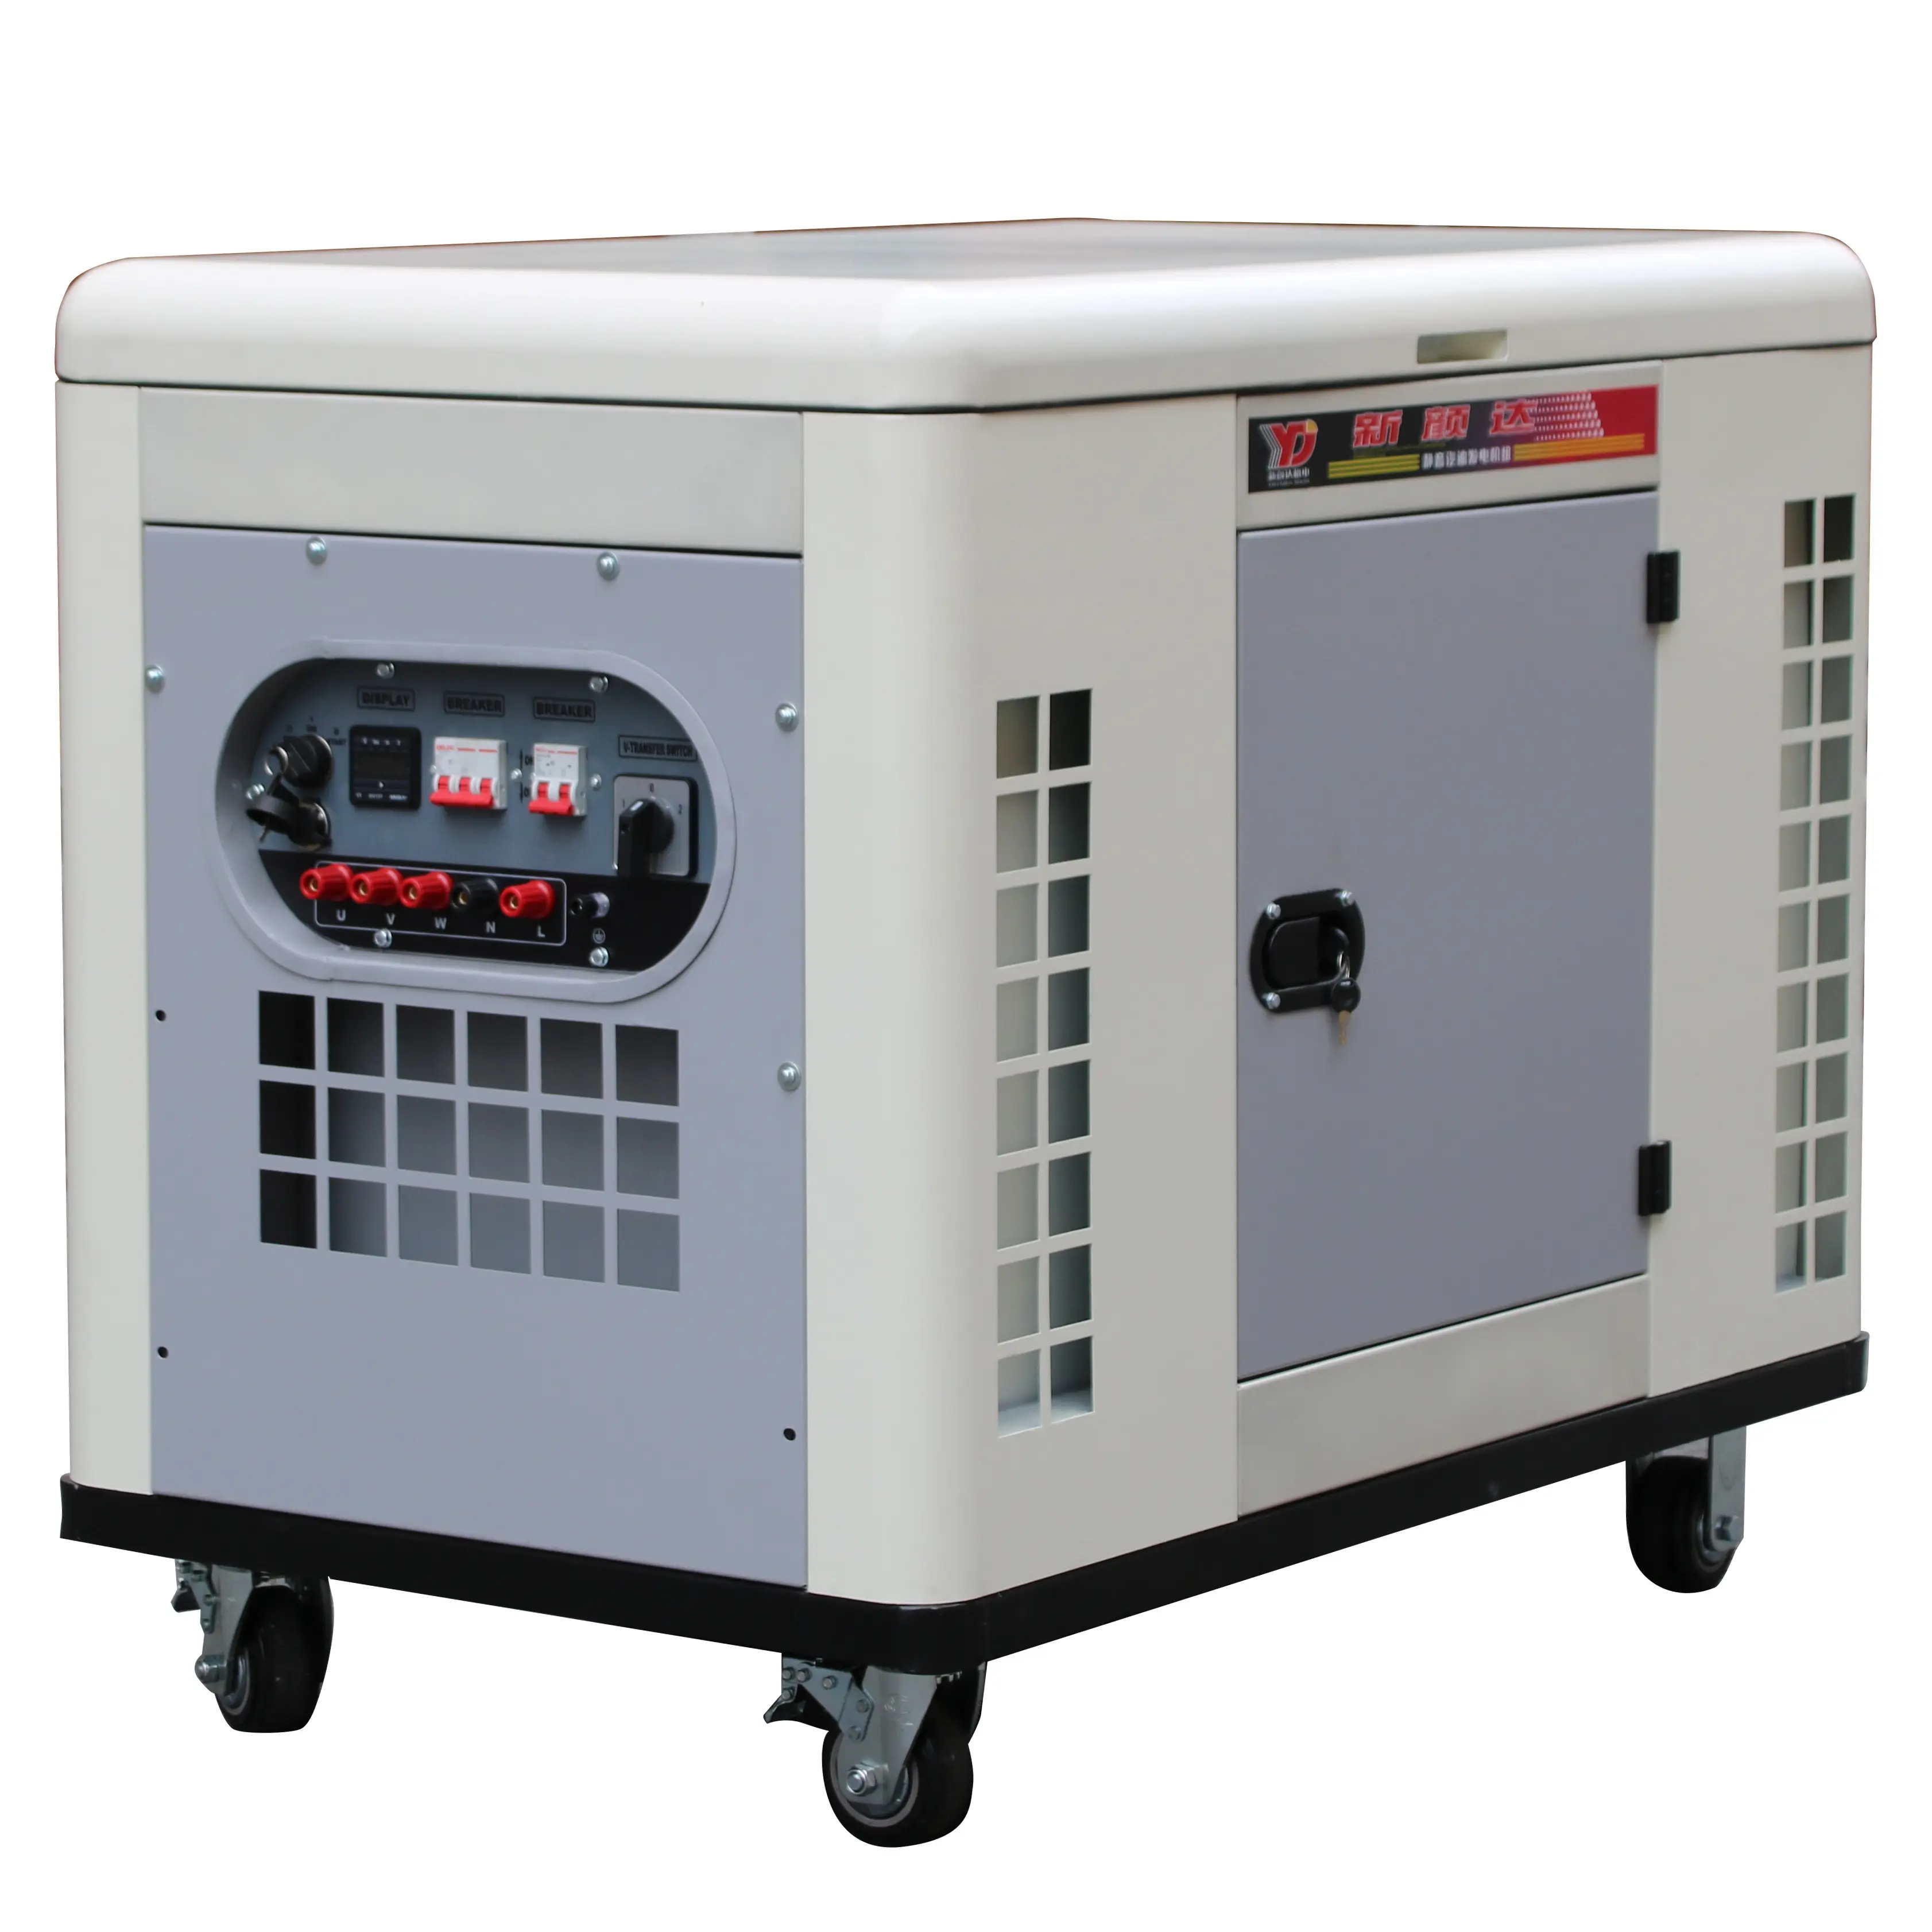 10kW три одиночно фазный АС бесшумный дизельный генератор набор для 110V 220V 230V 400V Потребляемая мощность в режиме ожидания